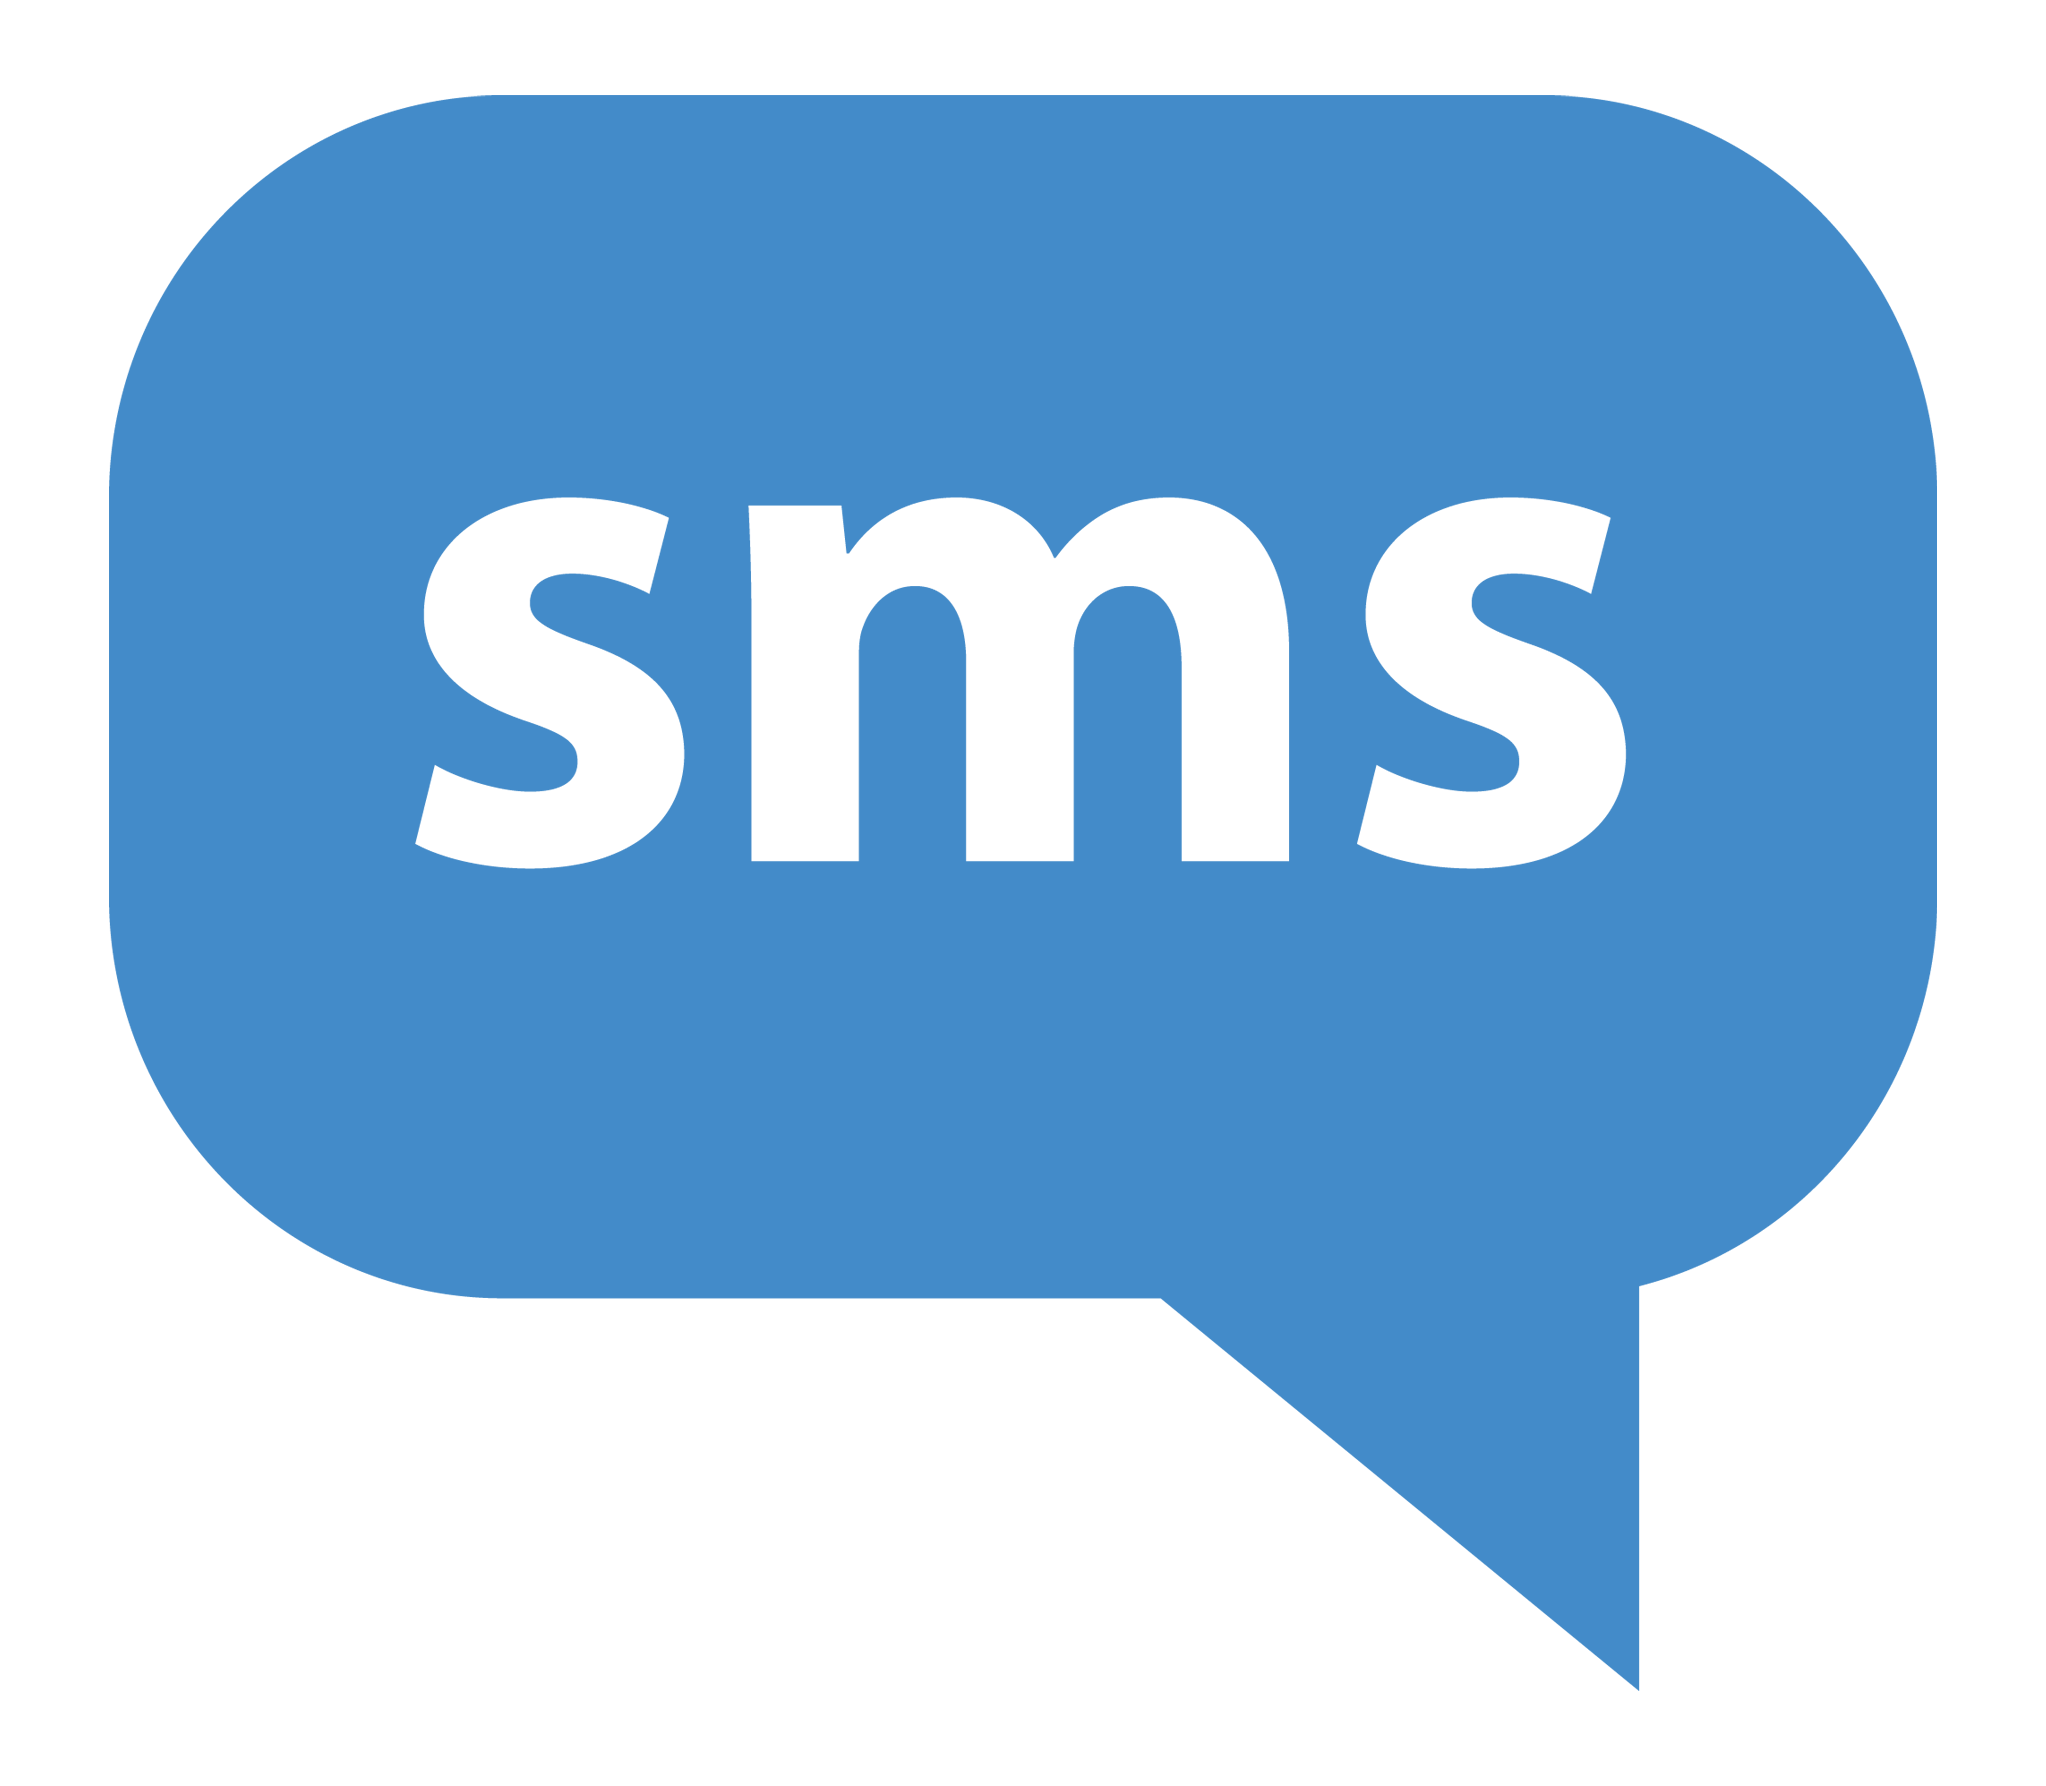 يقوم البرنامج بإخطار العميل برسالة SMS عند توافق طلب العميل لمواصفات عقار معين يكون محتواها ( نود إعلامكم بوجود عدد: (العدد) عقار للبيع متاح - يوافق طلبكم المدرج لدينا )